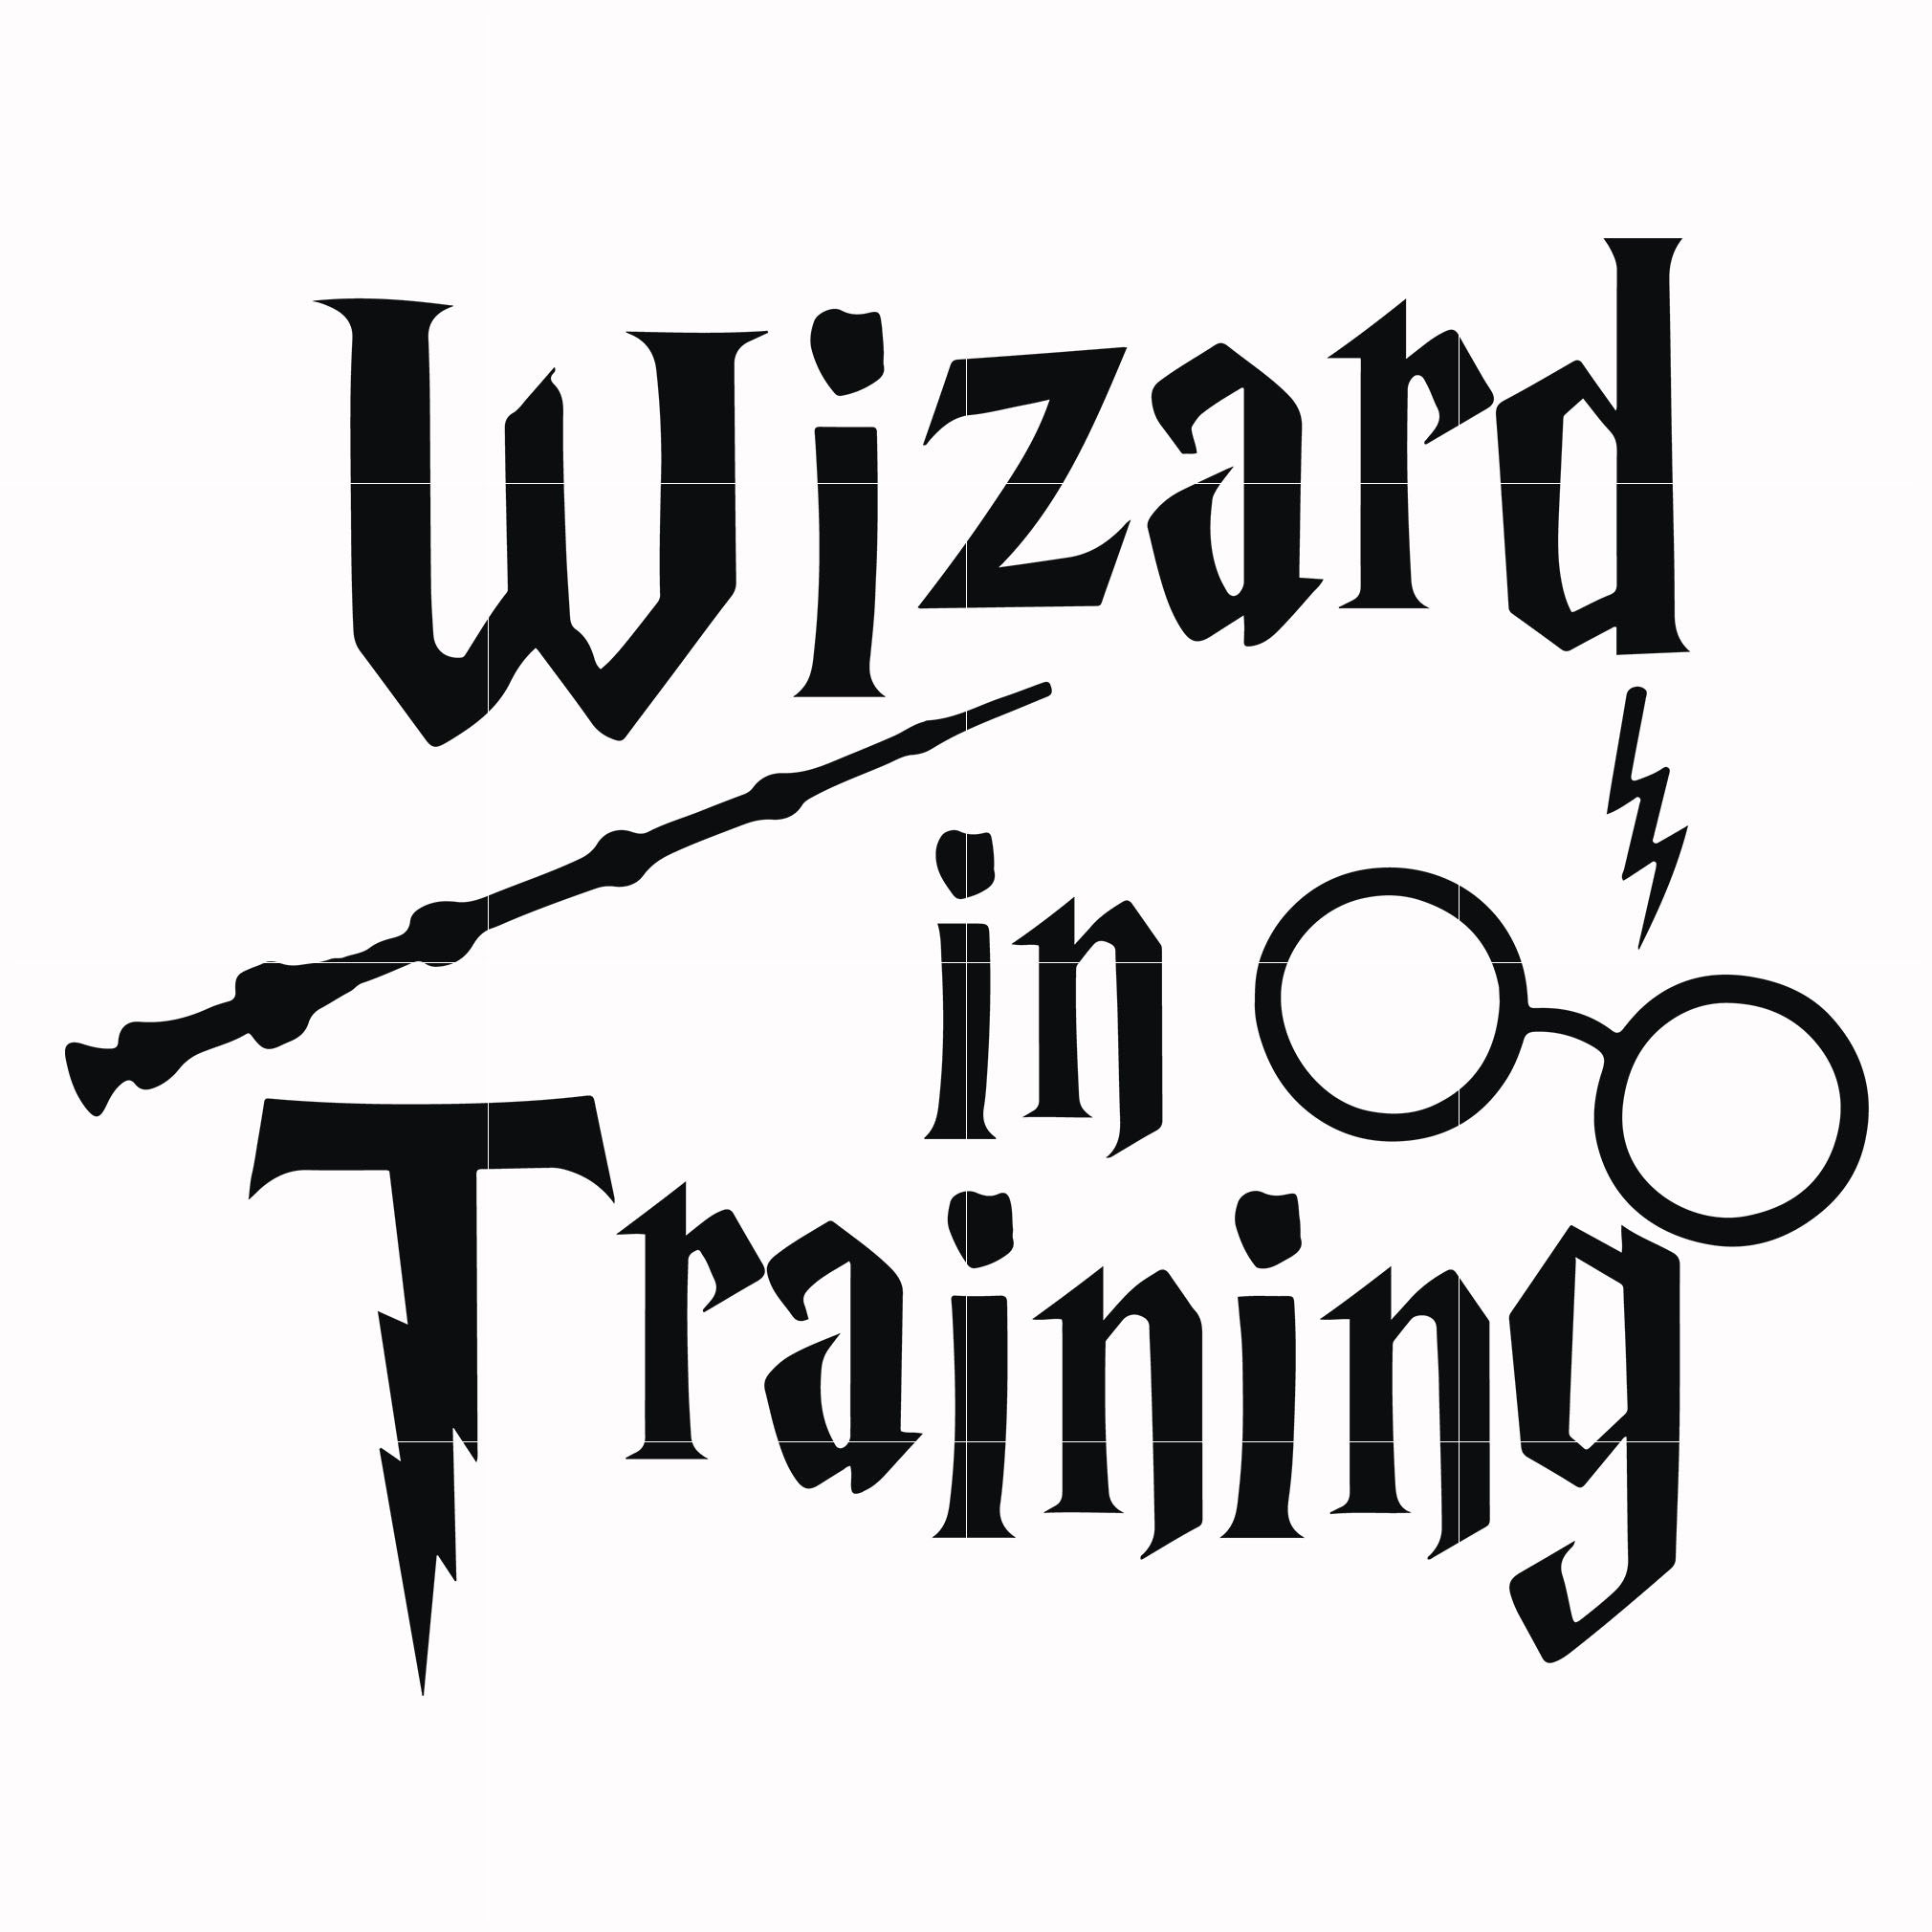 Download Wizard in training svg, harry potter svg, potter svg for ...